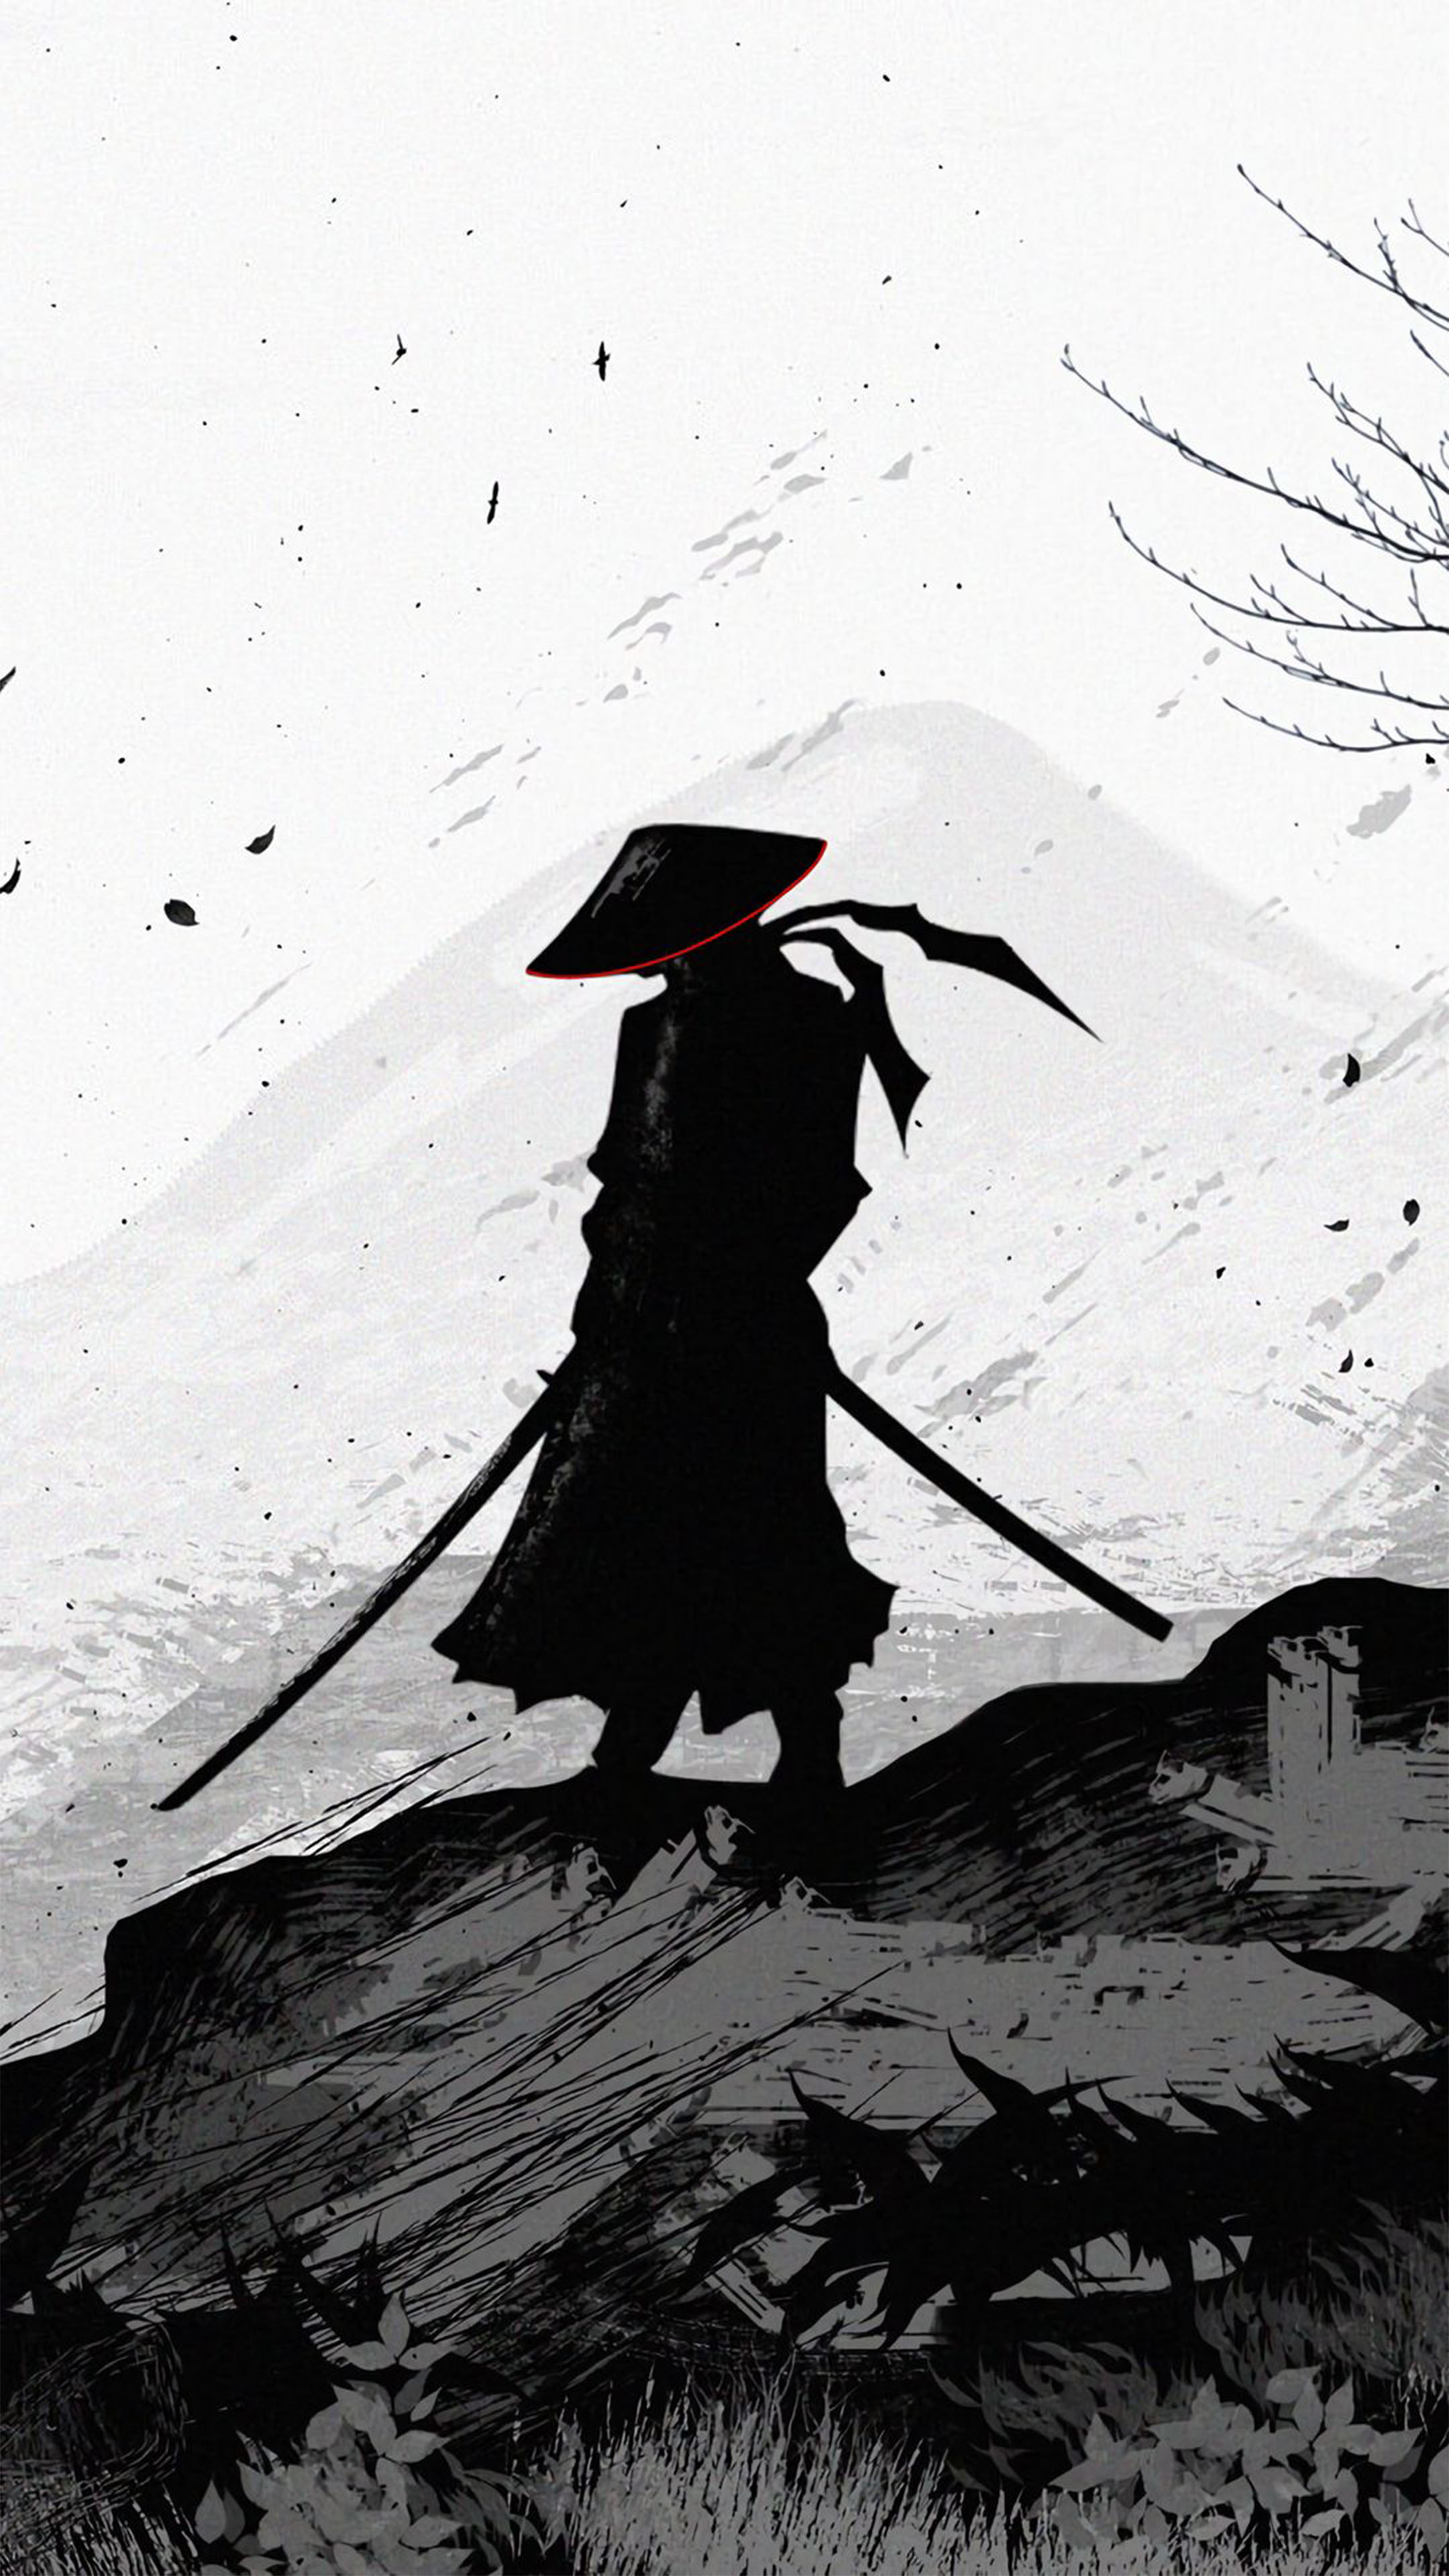 Hãy tìm hiểu về hình nền samurai đầy uy nghi, từ trang phục đến theo chân huyền thoại mưu sĩ này trong hình nền động đầy sinh động để mang đến lời nhắn nhủ về sức mạnh và nghị lực.